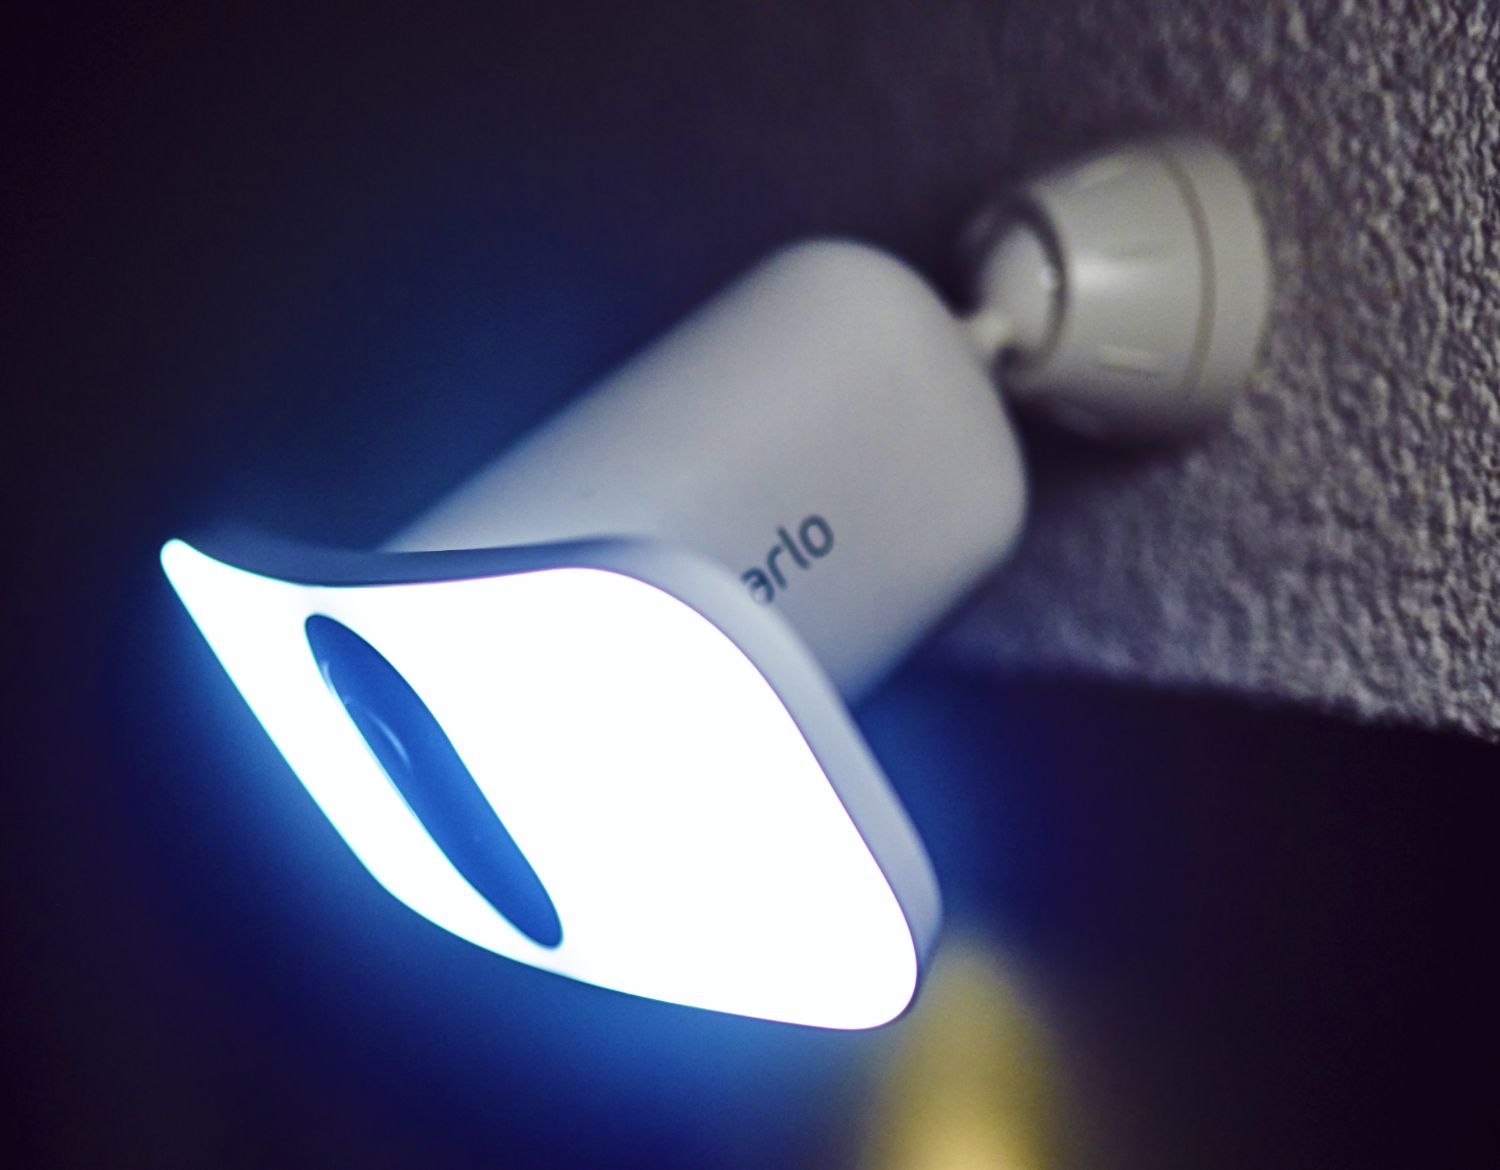 Una videocamera Arlo Floodlight illumina la tua proprietà con una luce da 3000 lumen più luminosa del faro di un'auto